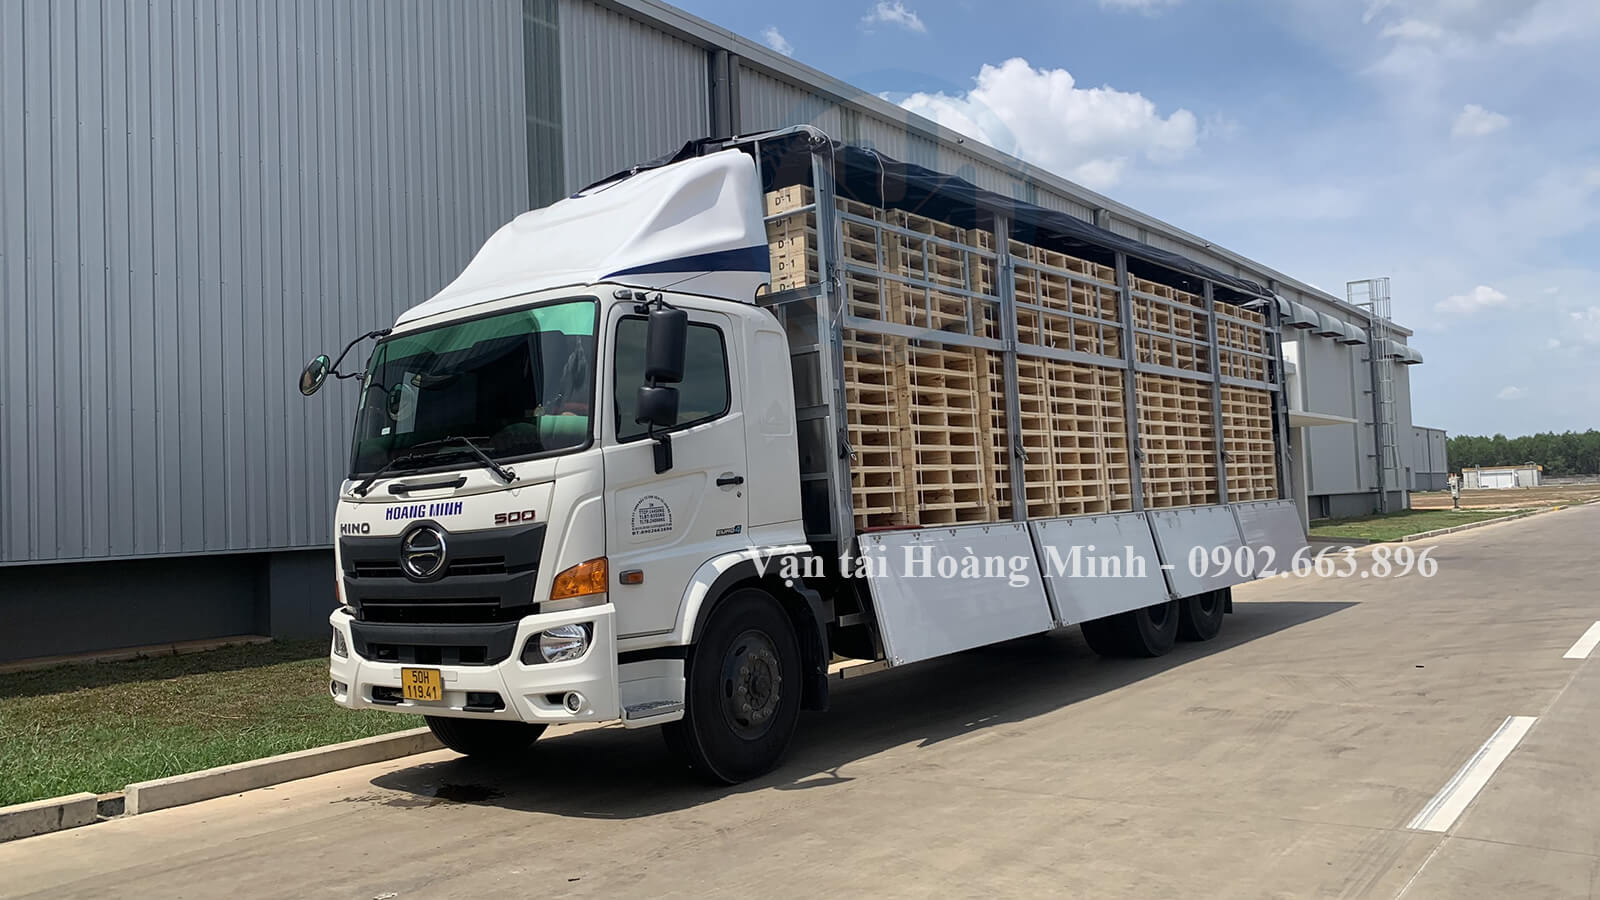 Hình ảnh xe tải chở hàng tiêu dùng, nước giải khát phân phối cho các đại lý lớn tại các tỉnh thành Đồng Nai, Bà Rịa Vũng Tàu